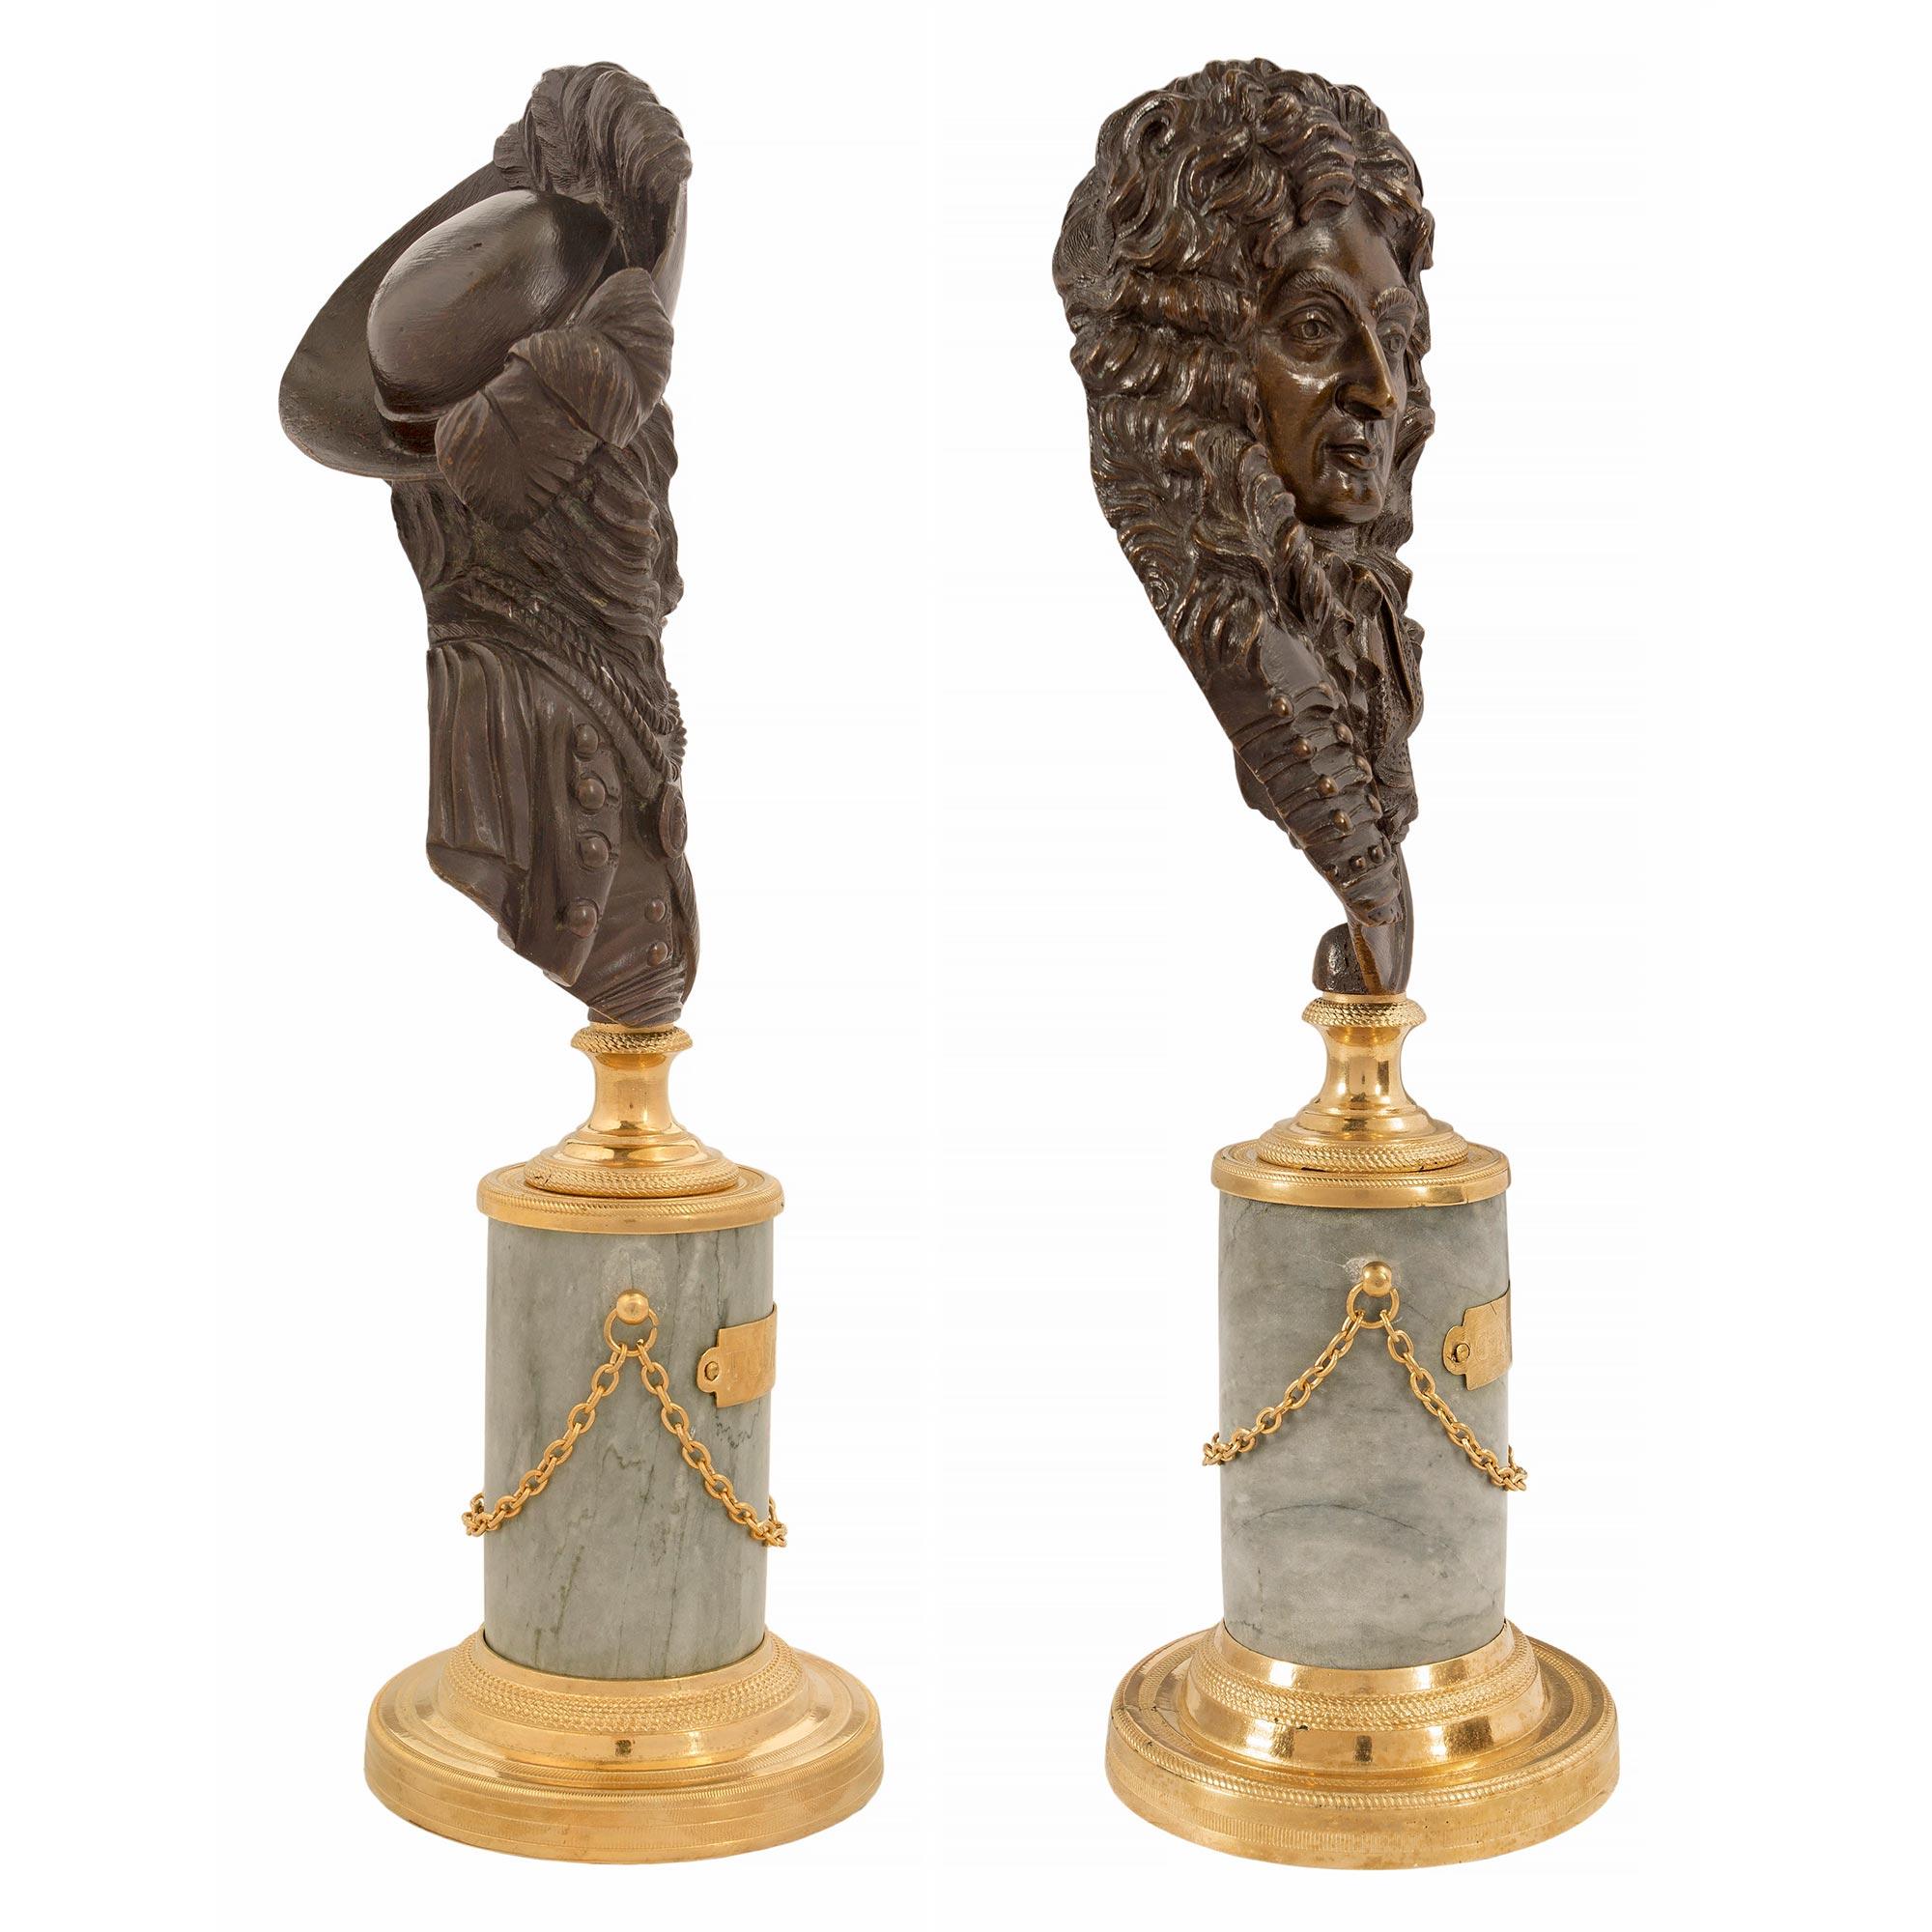 Paire de statuettes en bronze patiné, bronze doré et marbre Gris St Anne de style Louis XVI du 19ème siècle représentant Nicolas Catinat et le Comte de Tourville, tous deux maréchaux de France. Chaque statue est surélevée par une base circulaire en